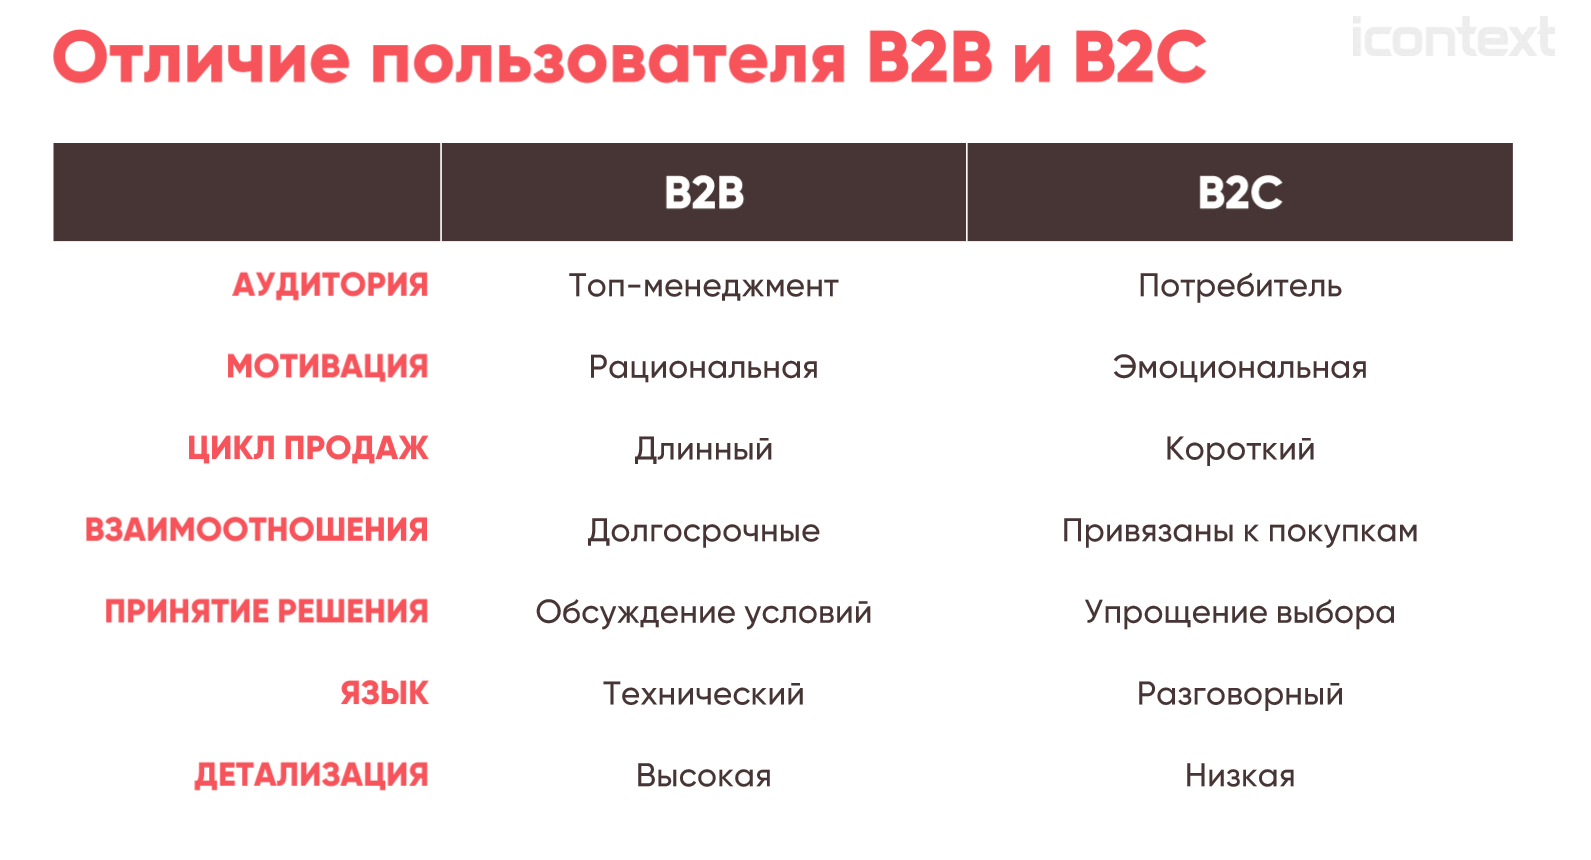 Как отличить c. Различия b2b и b2c. Целевая аудитория b2b.